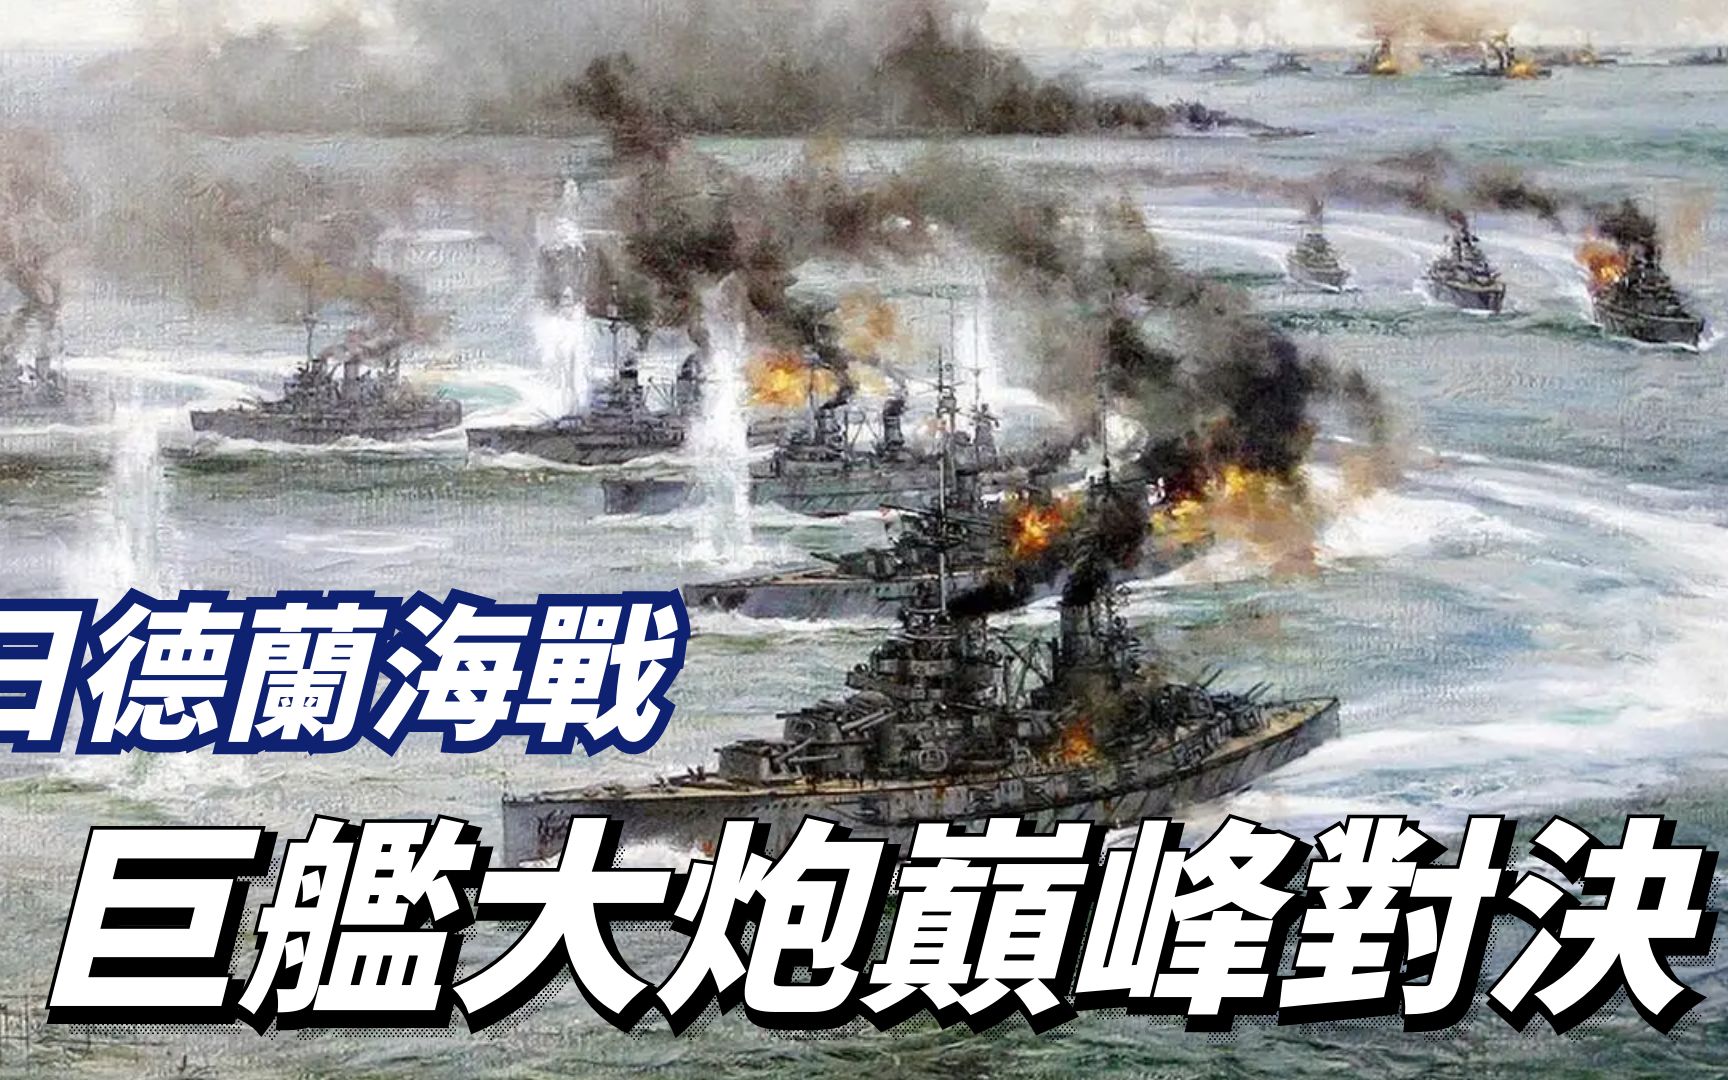 日德兰海战,史上最大规模主力舰对决,大舰巨炮的巅峰之战